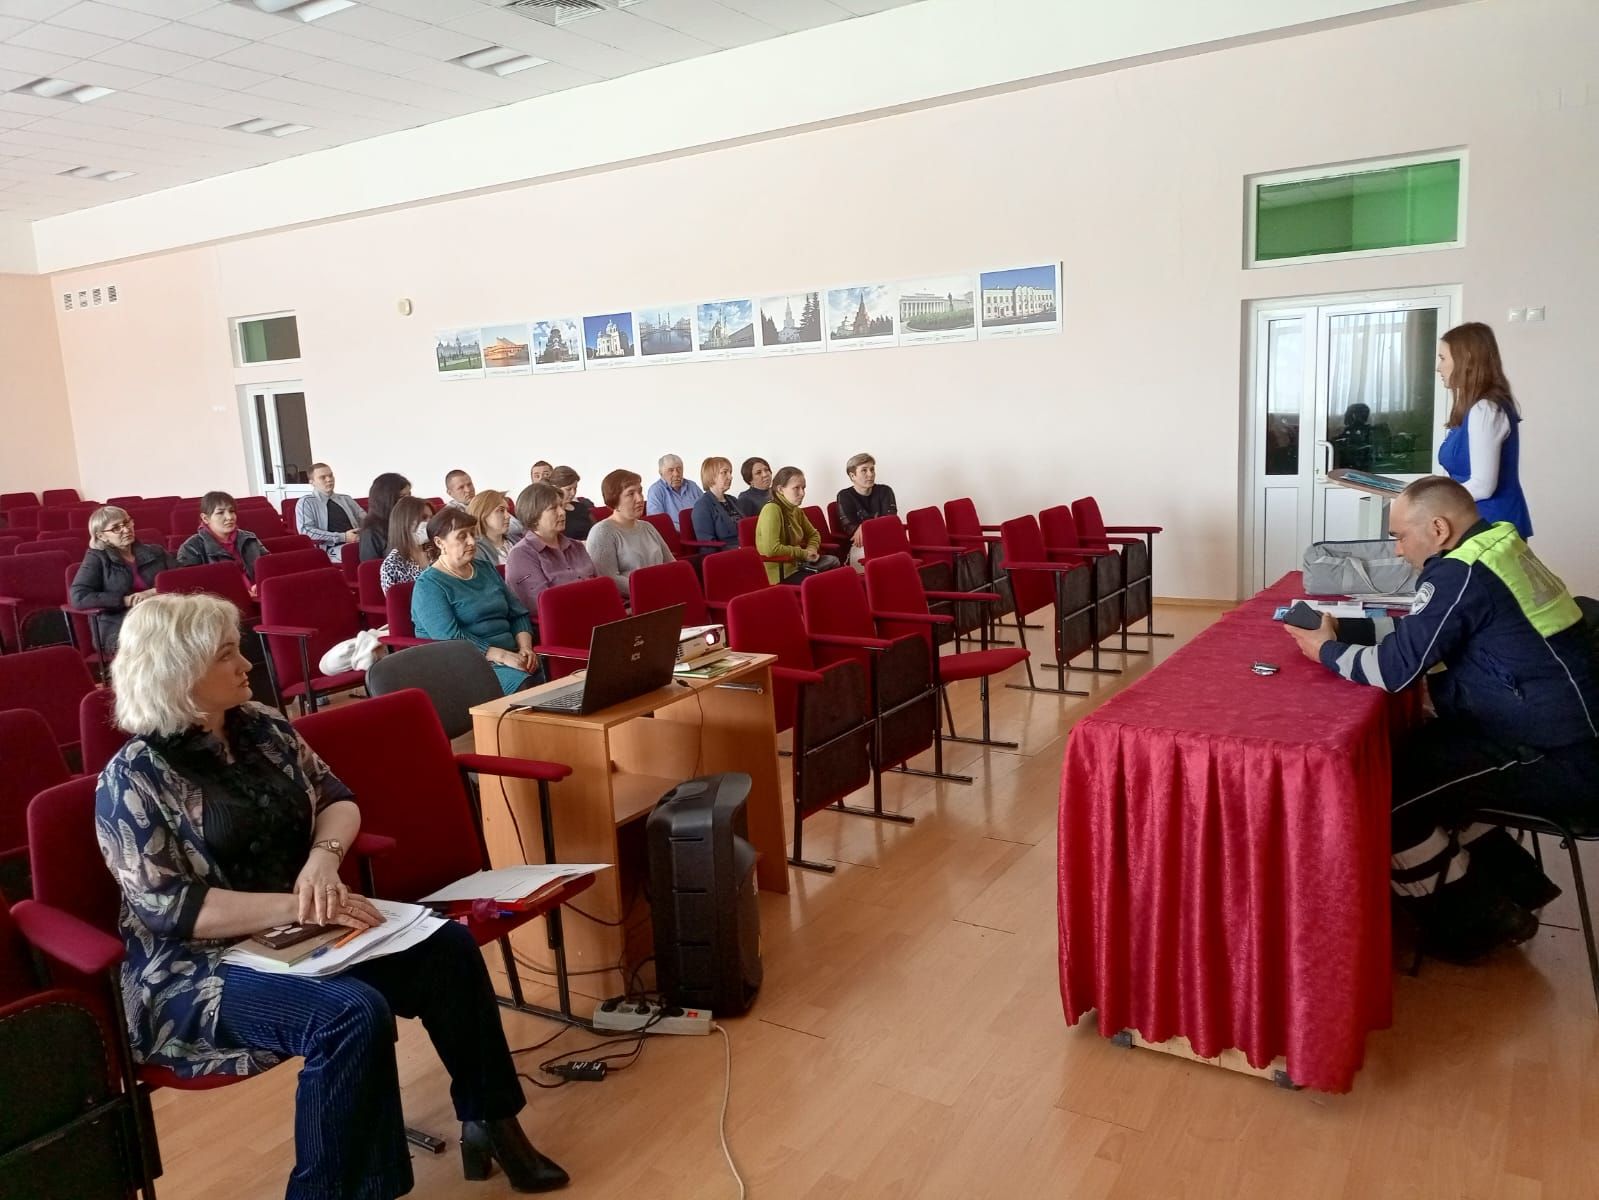 В школах Дрожжановского района РТ проходят профилактические мероприятия с участием автоинспекторов и специалиста по БДД